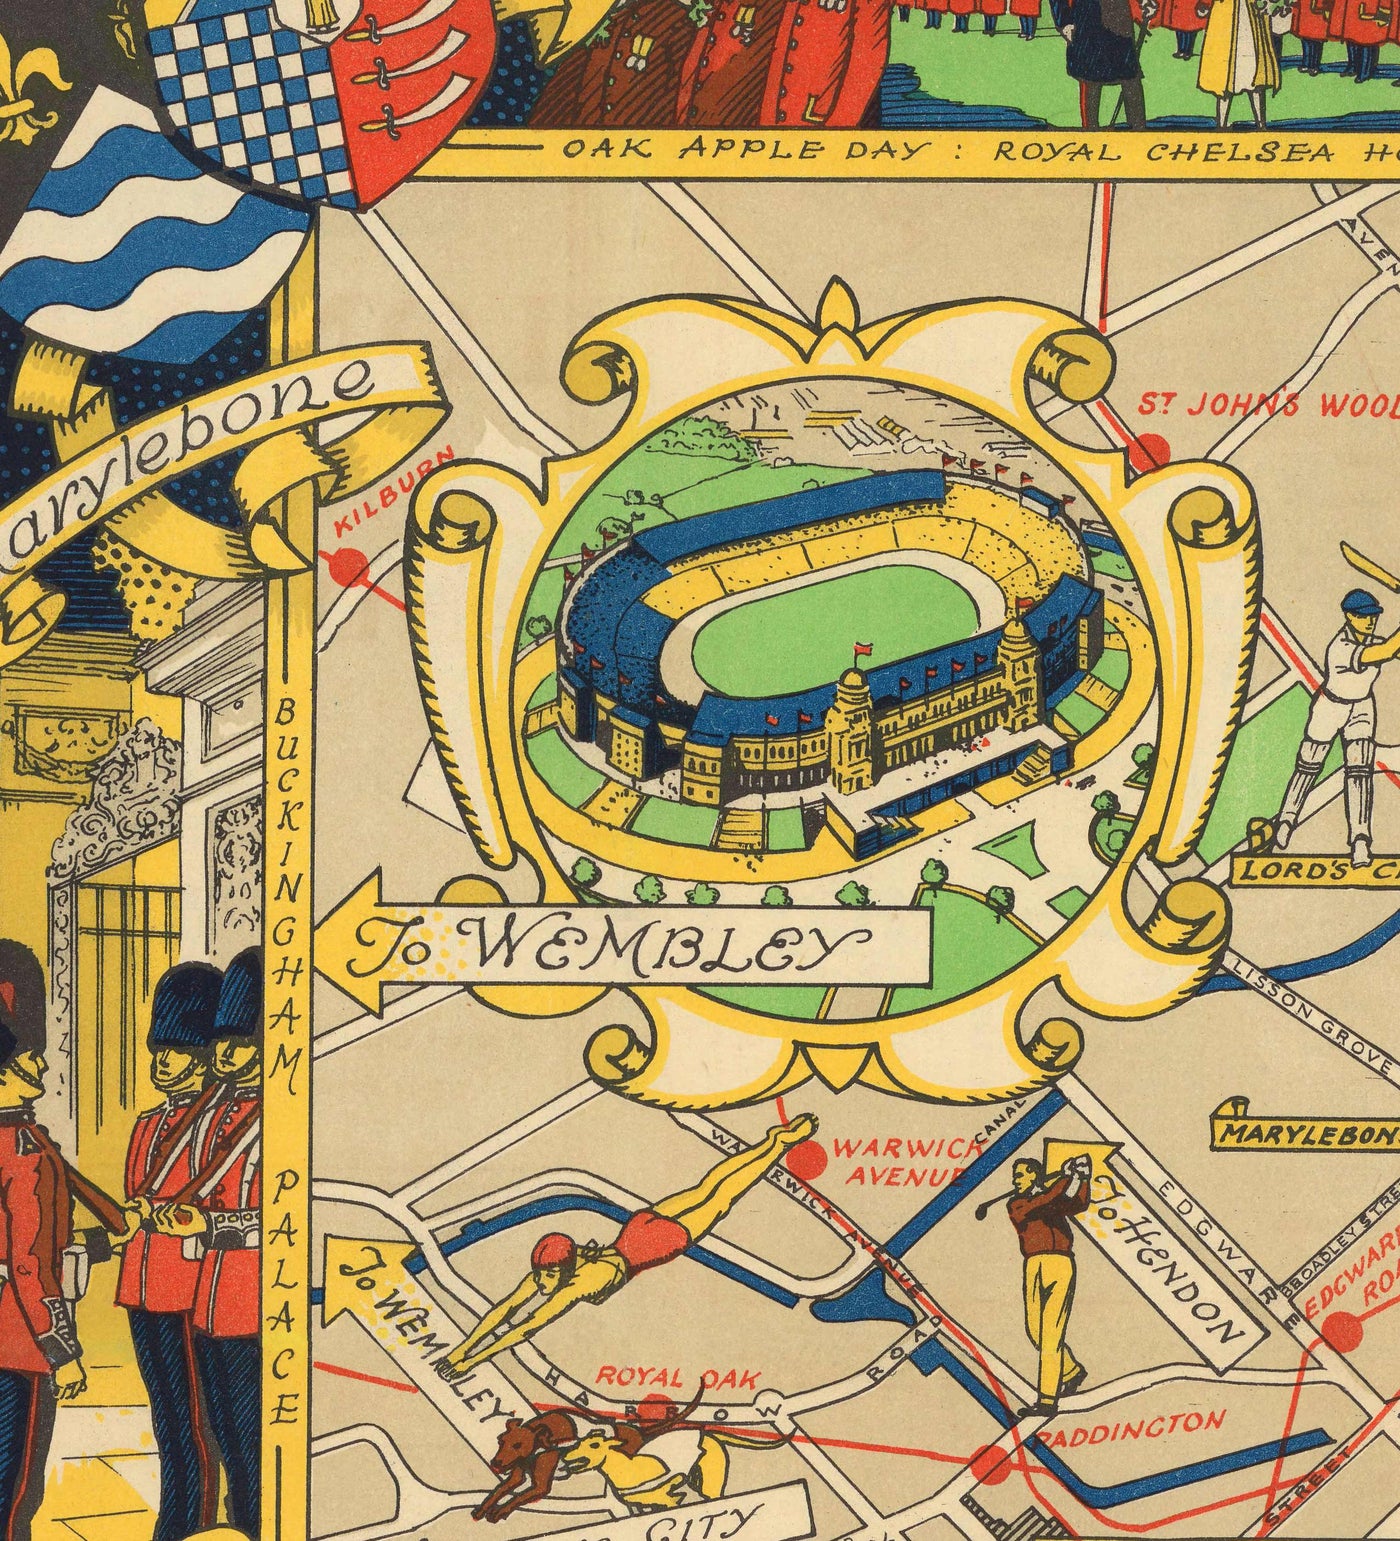 Alte Karte von Central London, 1951 - Festival von Großbritannien, Royal Festival Hall, Sehenswürdigkeiten, Südbank